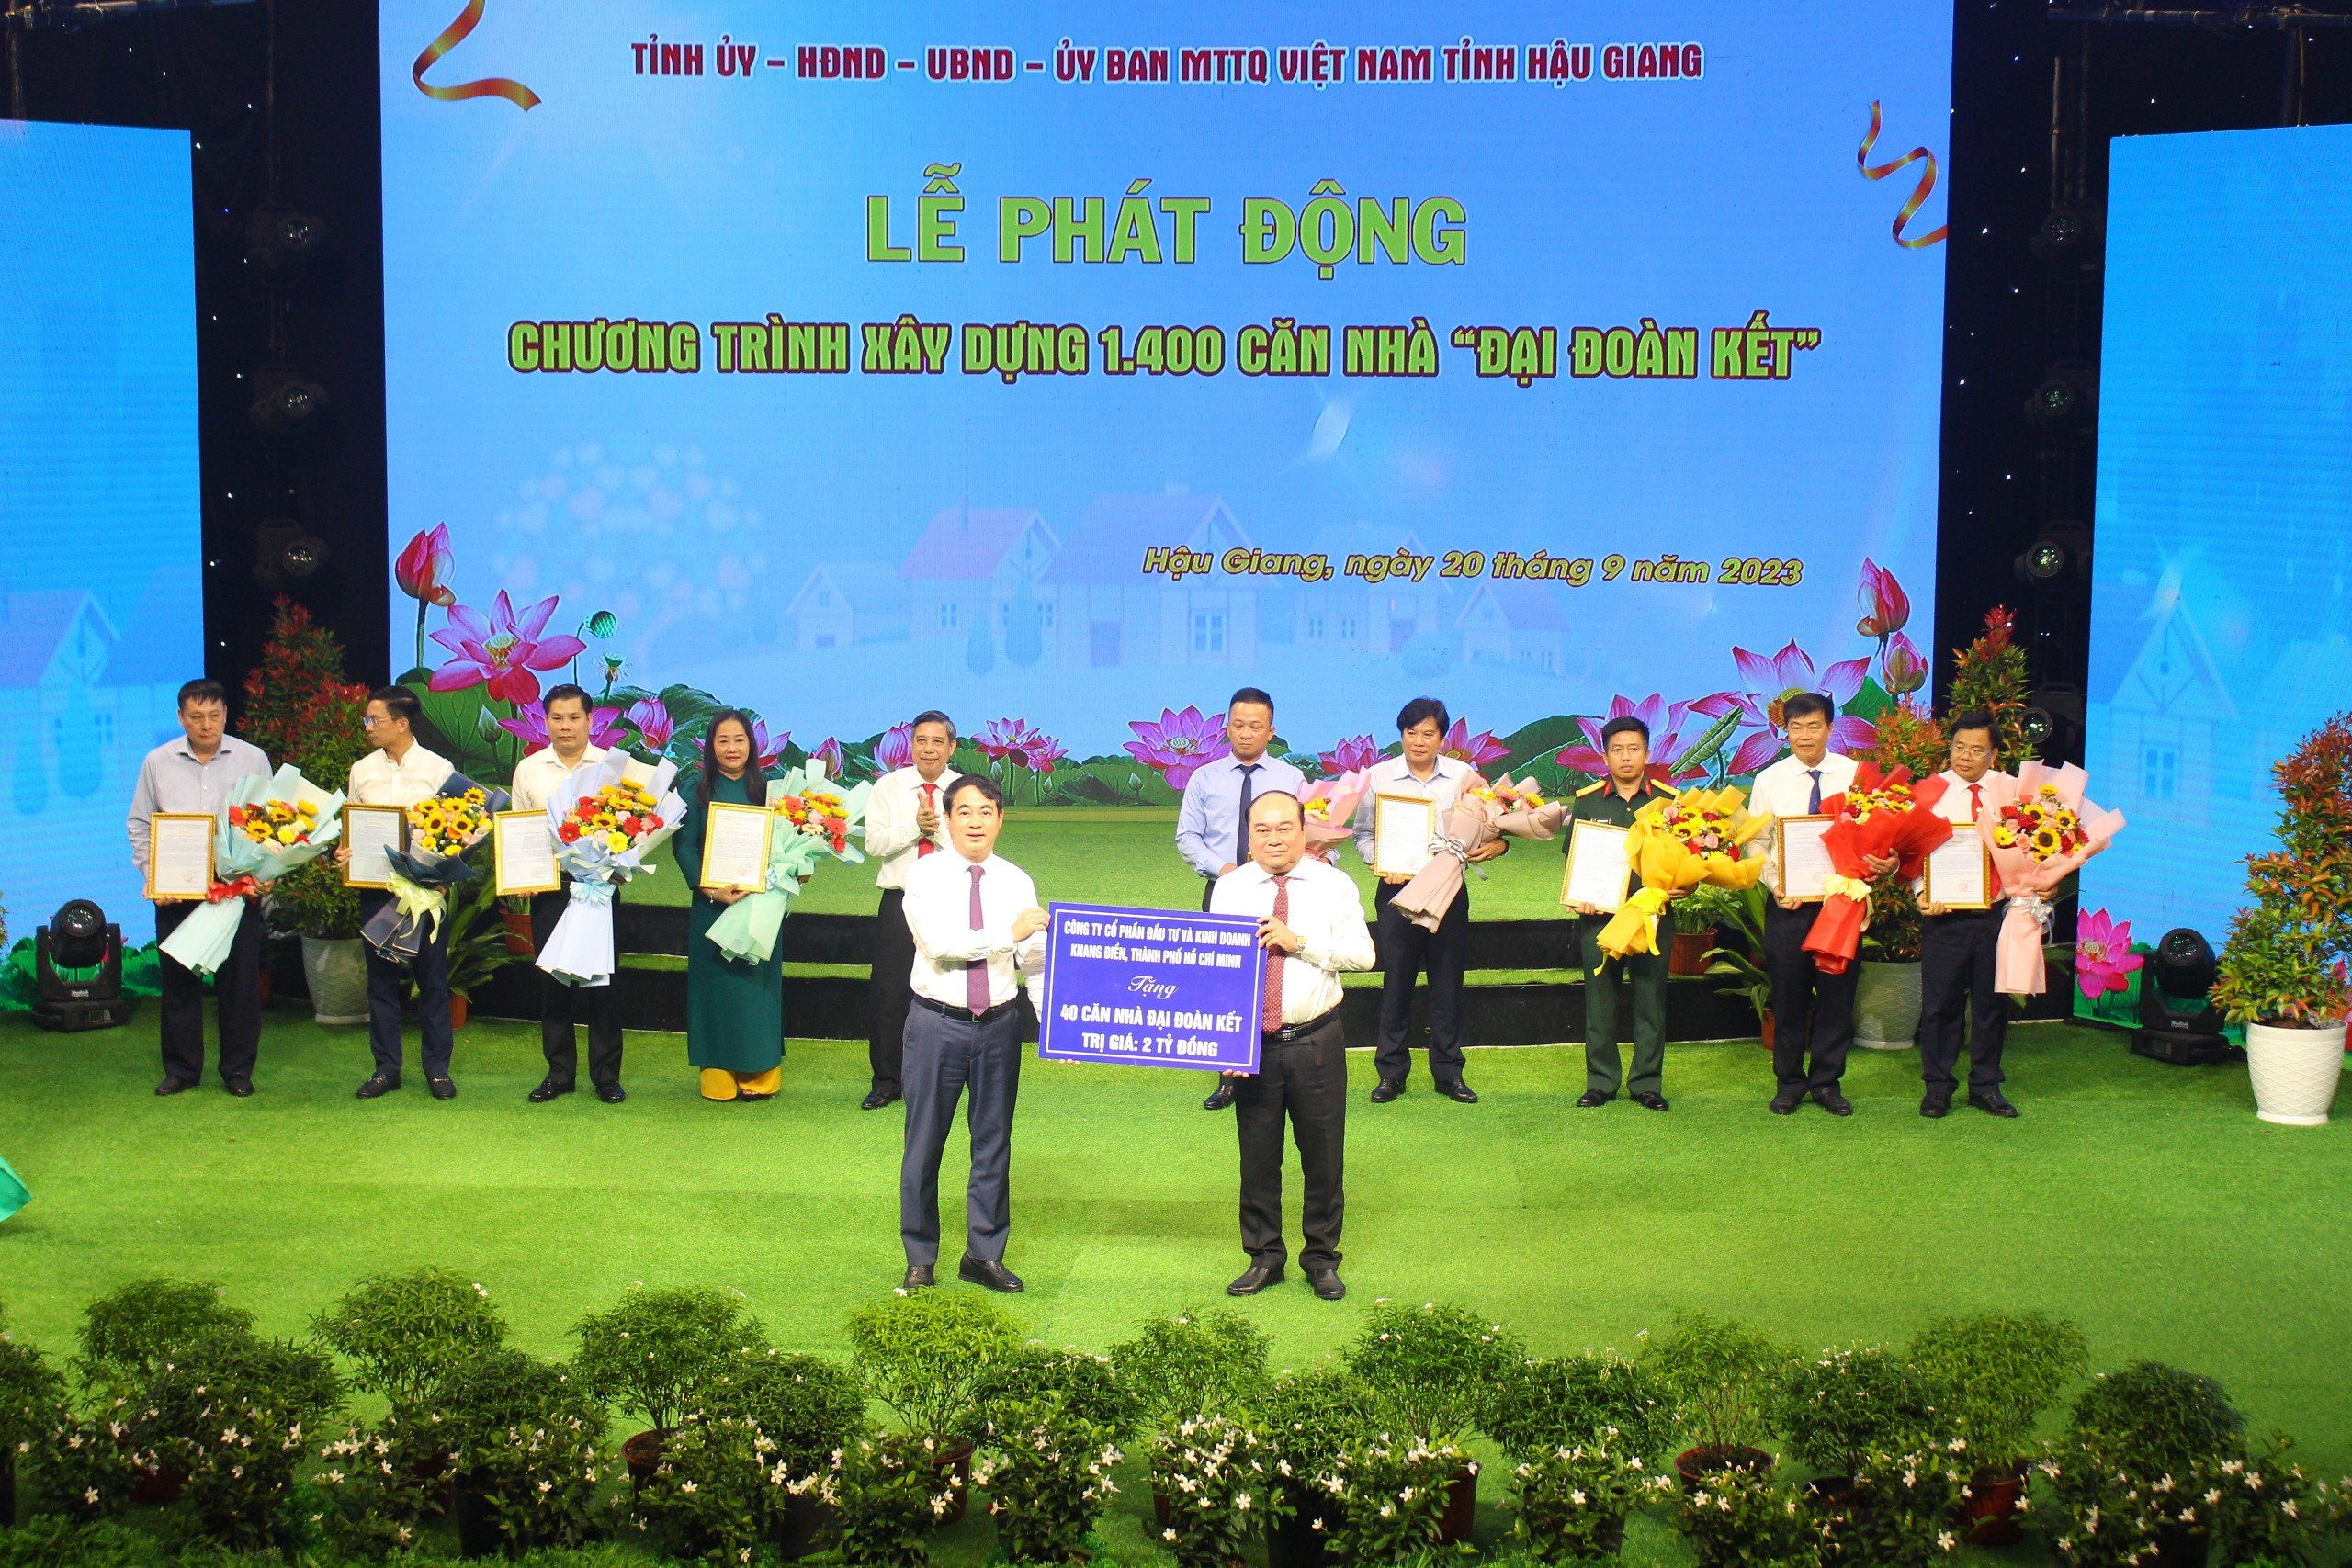 Bí thư Tỉnh ủy Hậu Giang Nghiêm Xuân Thành nhận biểu trưng từ các nhà tài trợ.